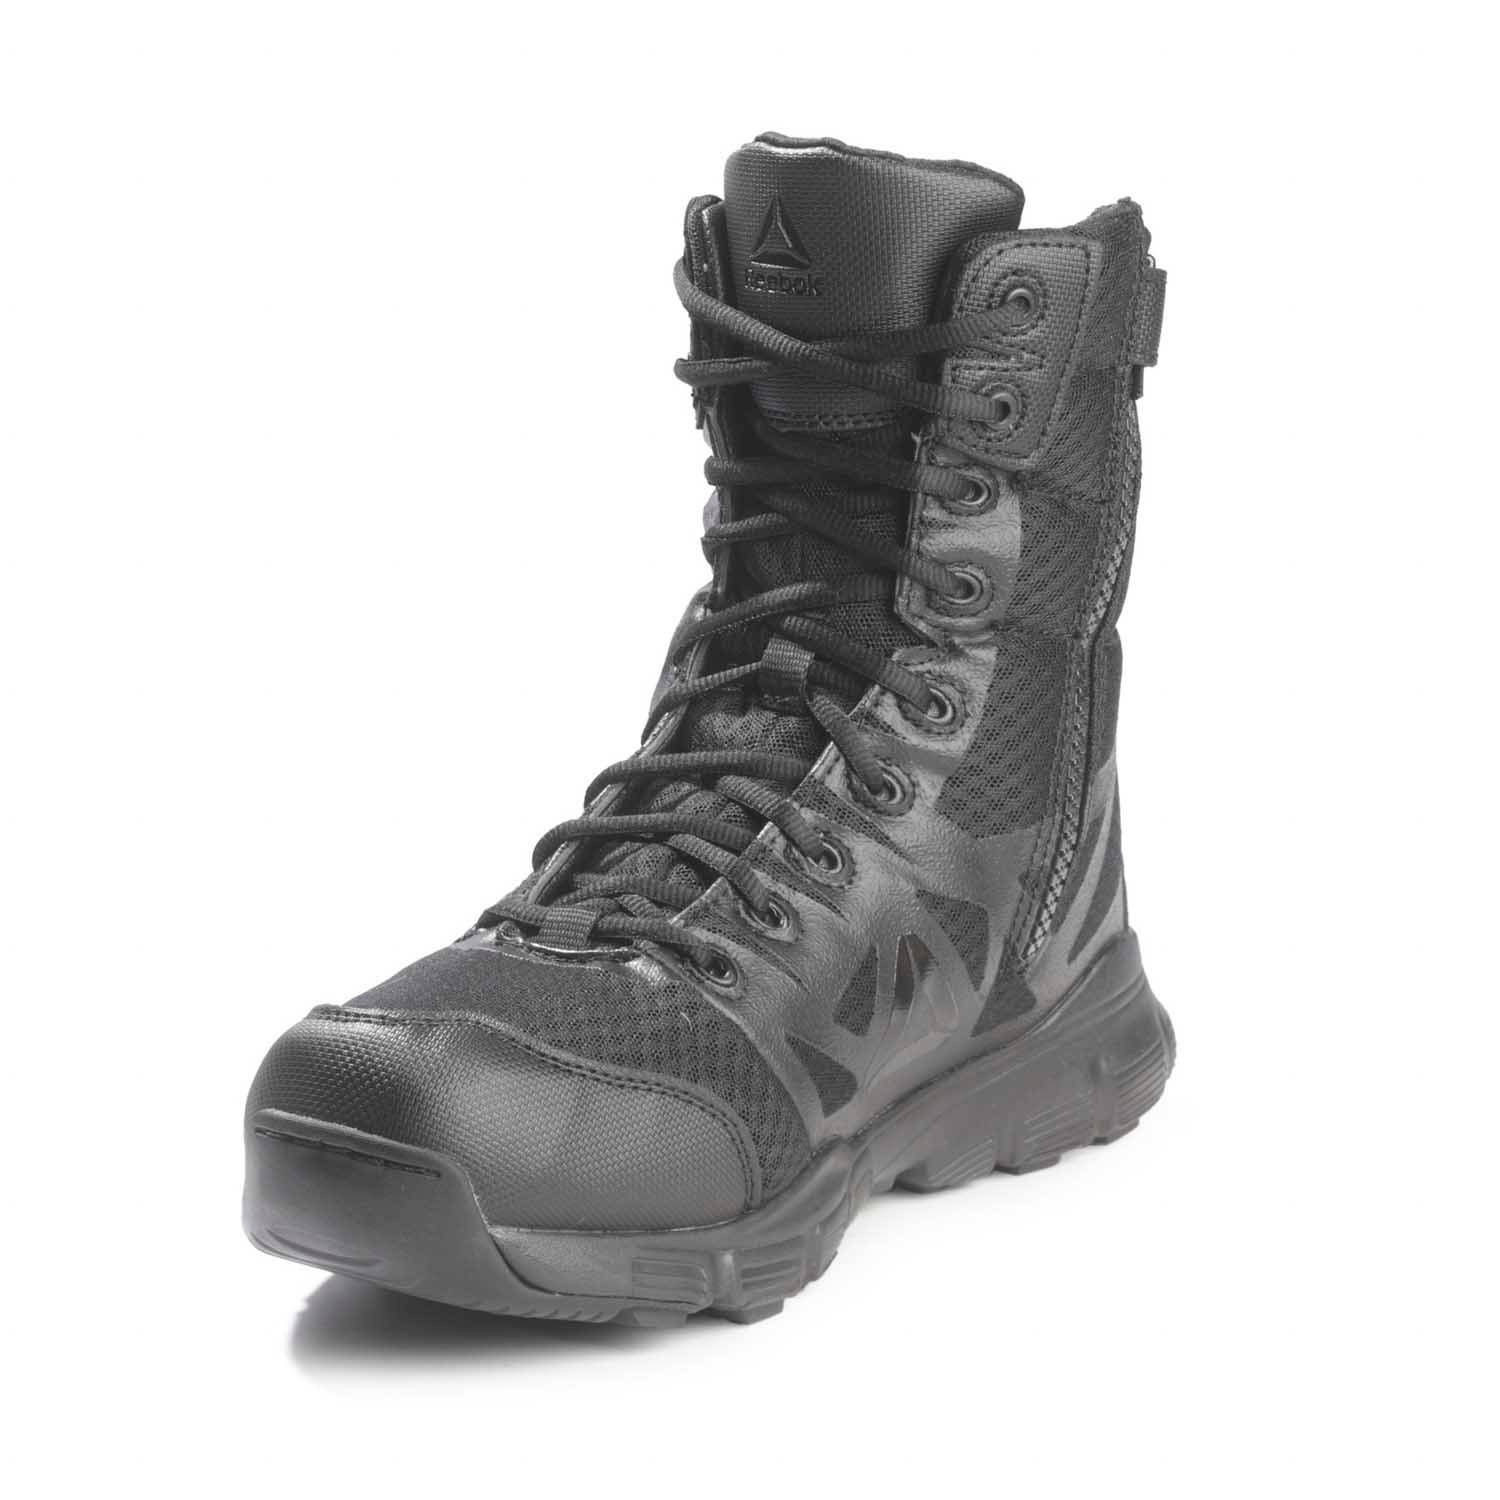 reebok men's dauntless 8 tactical boots with side zip